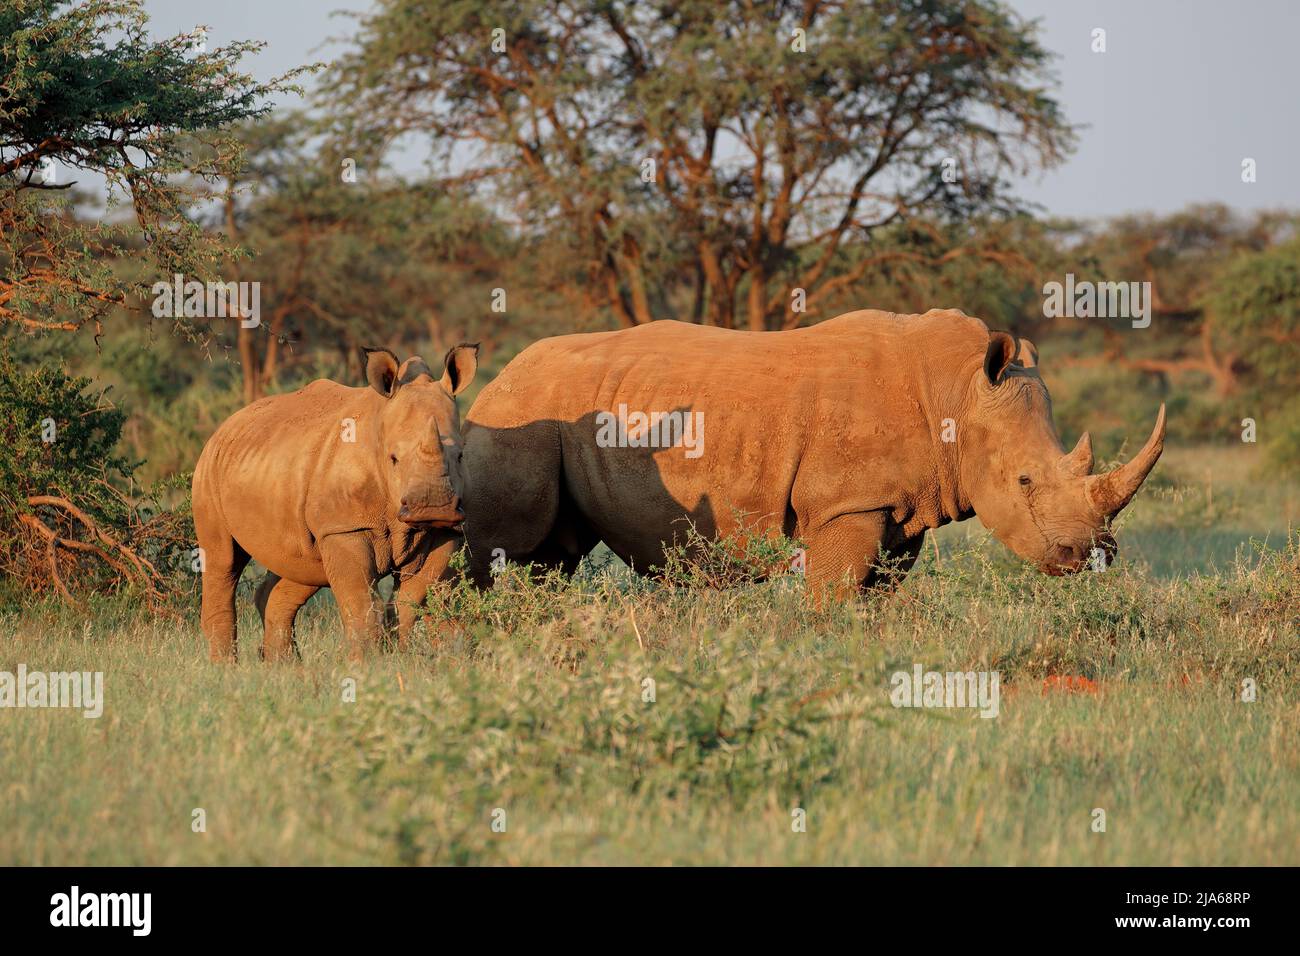 El rinoceronte blanco (Ceratotherium simum) con la pantorrilla en hábitat natural, Sudáfrica Foto de stock